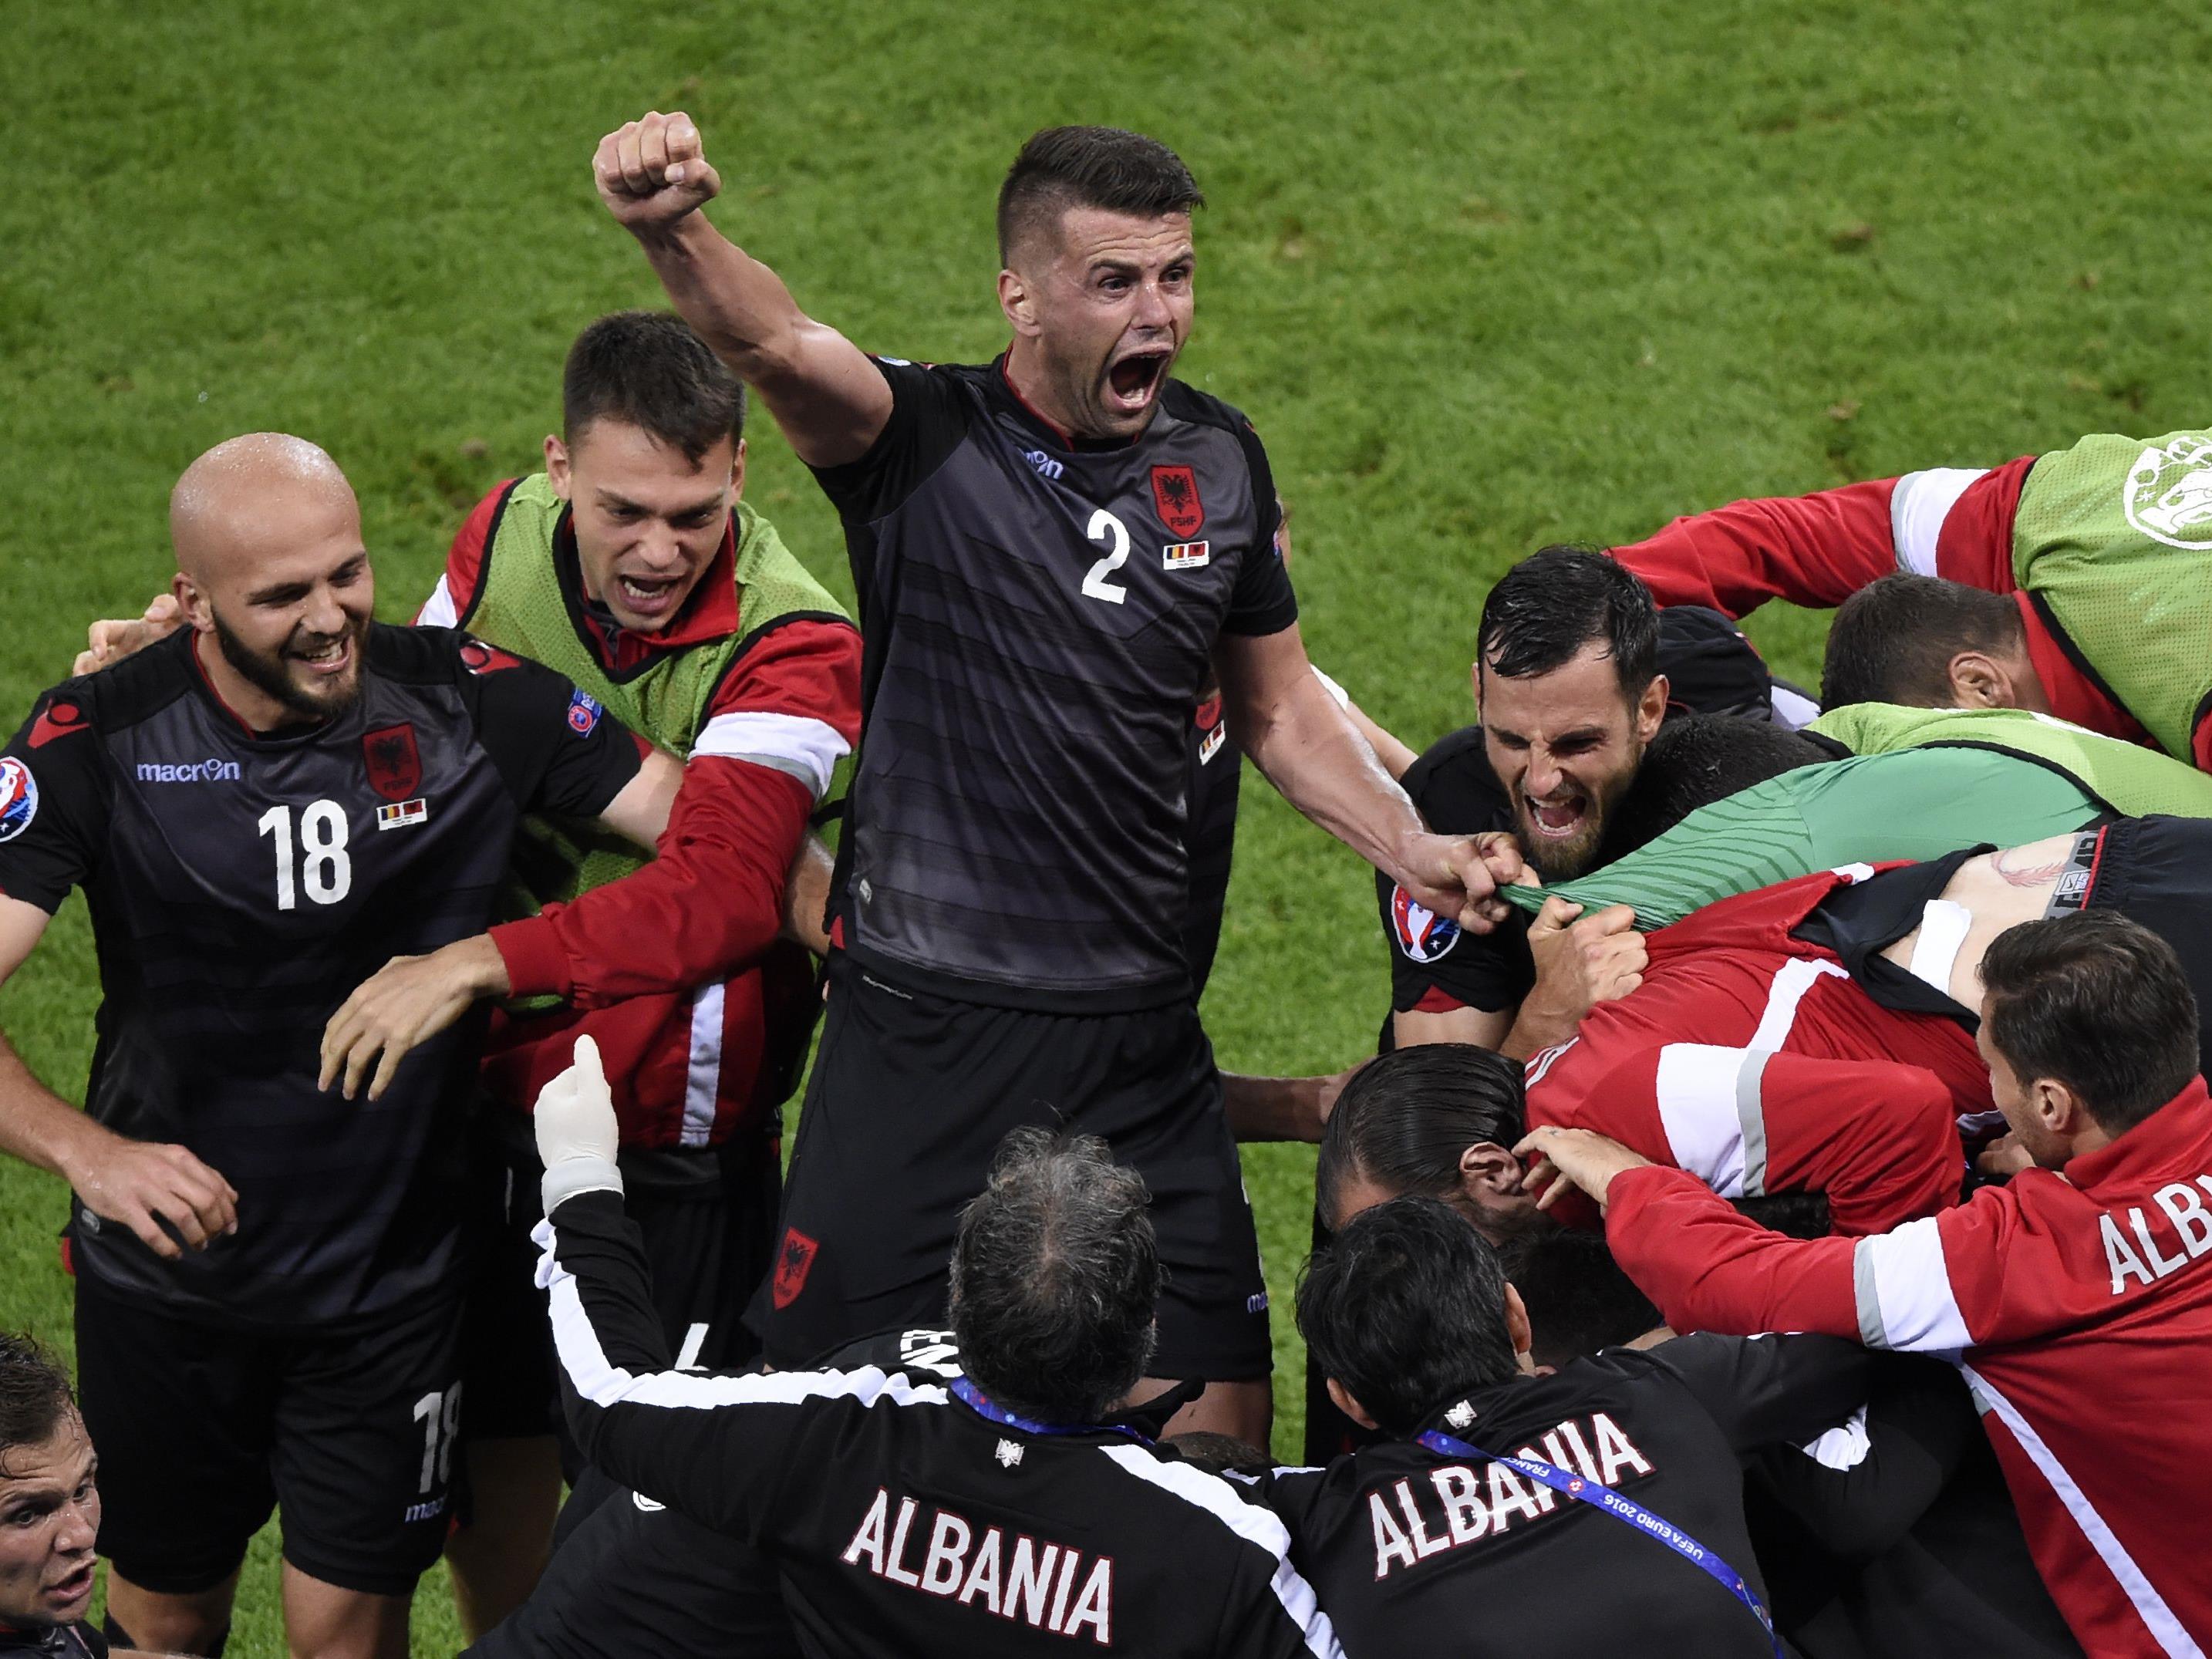 Frankreich bleibt Tabellenerster, Albanien (Bild) punktet im Entscheidungsspiel.